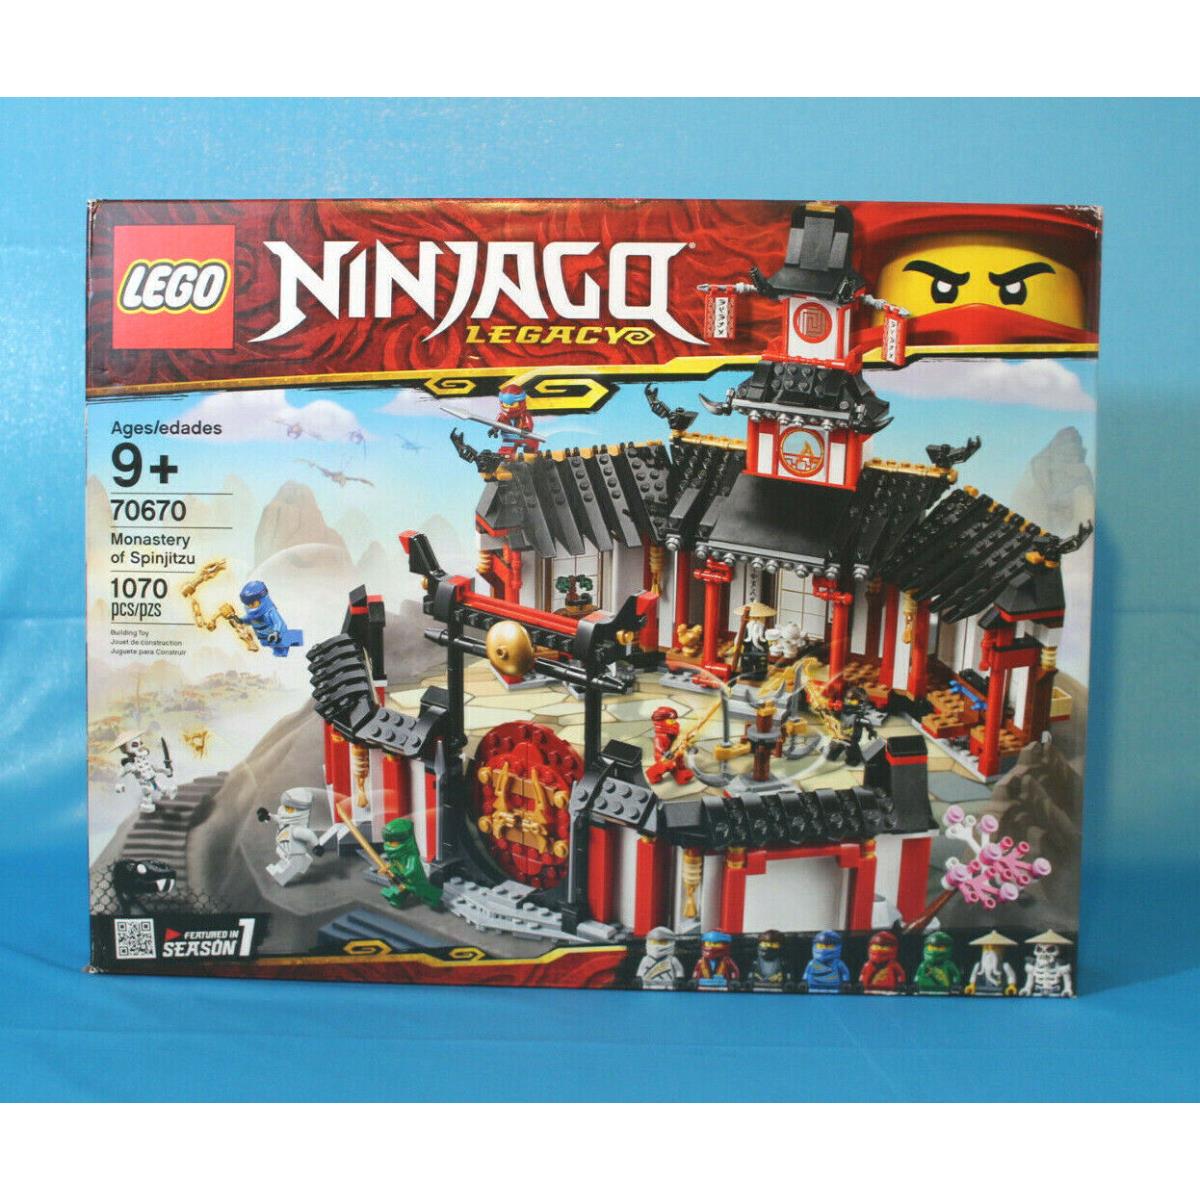 Lego Ninjago 70670 Legacy Monastery of Spinjitzu Retired 2018